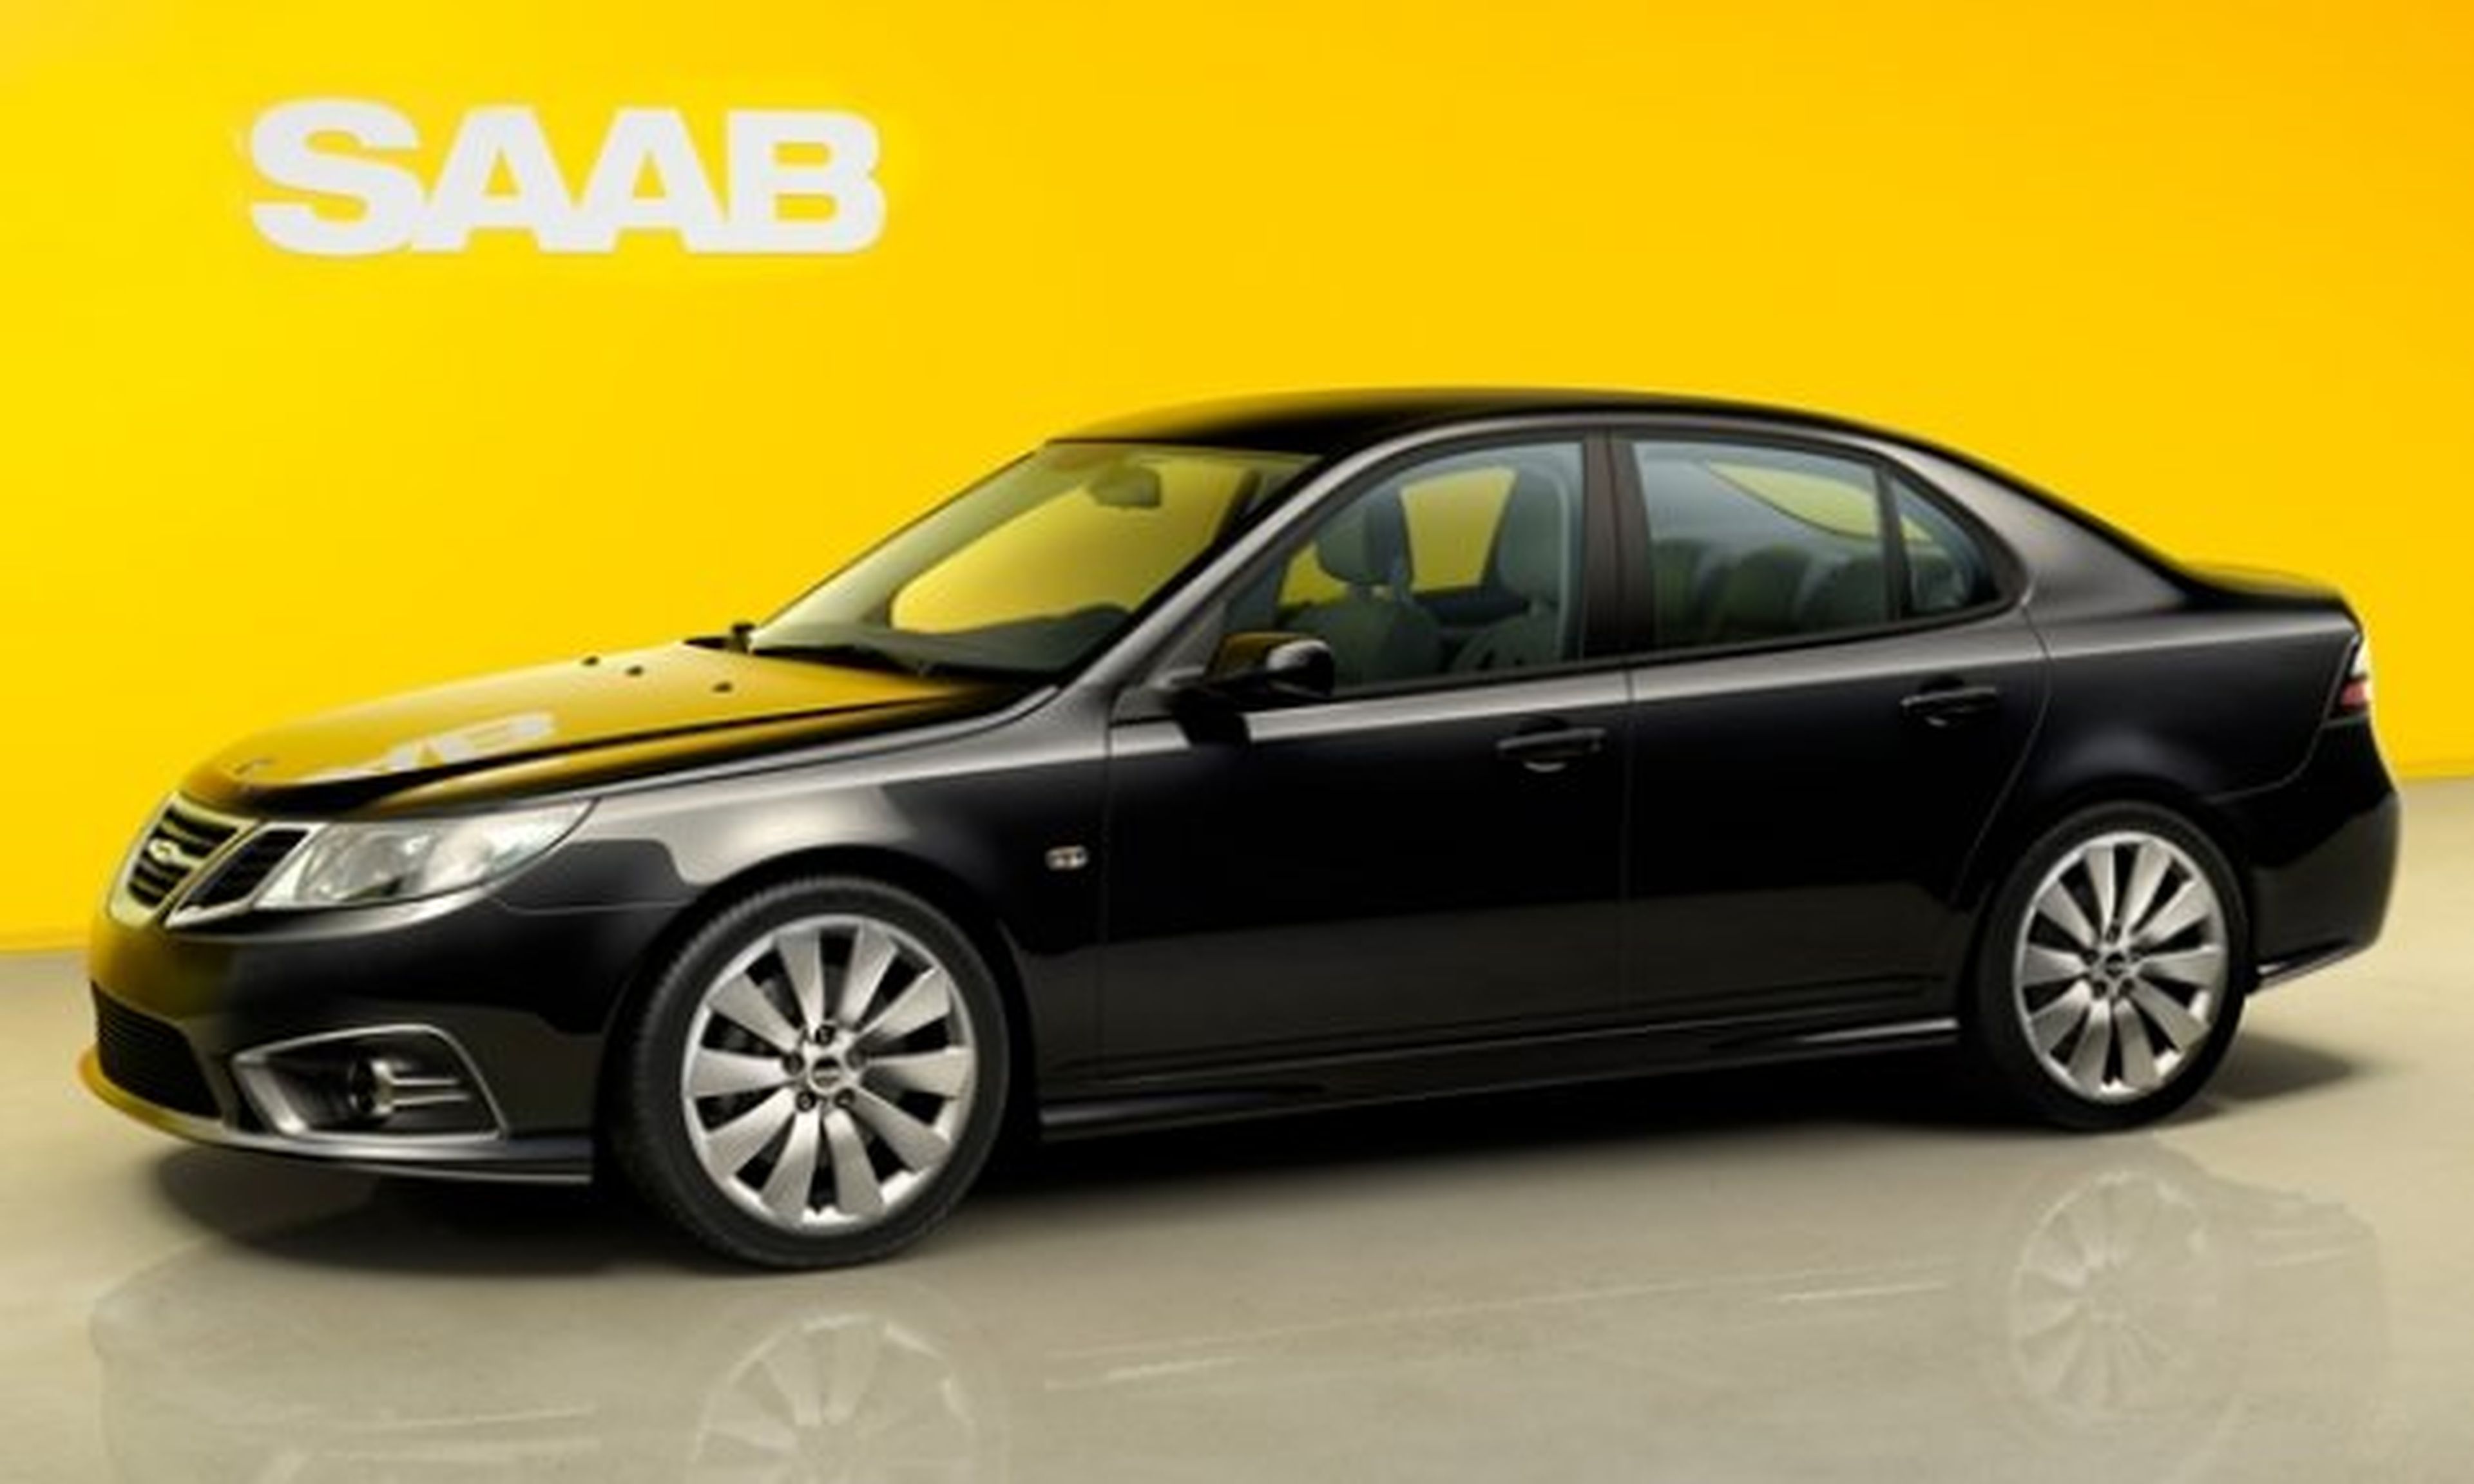 Paralizan la producción del Saab 9-3 por causas económicas